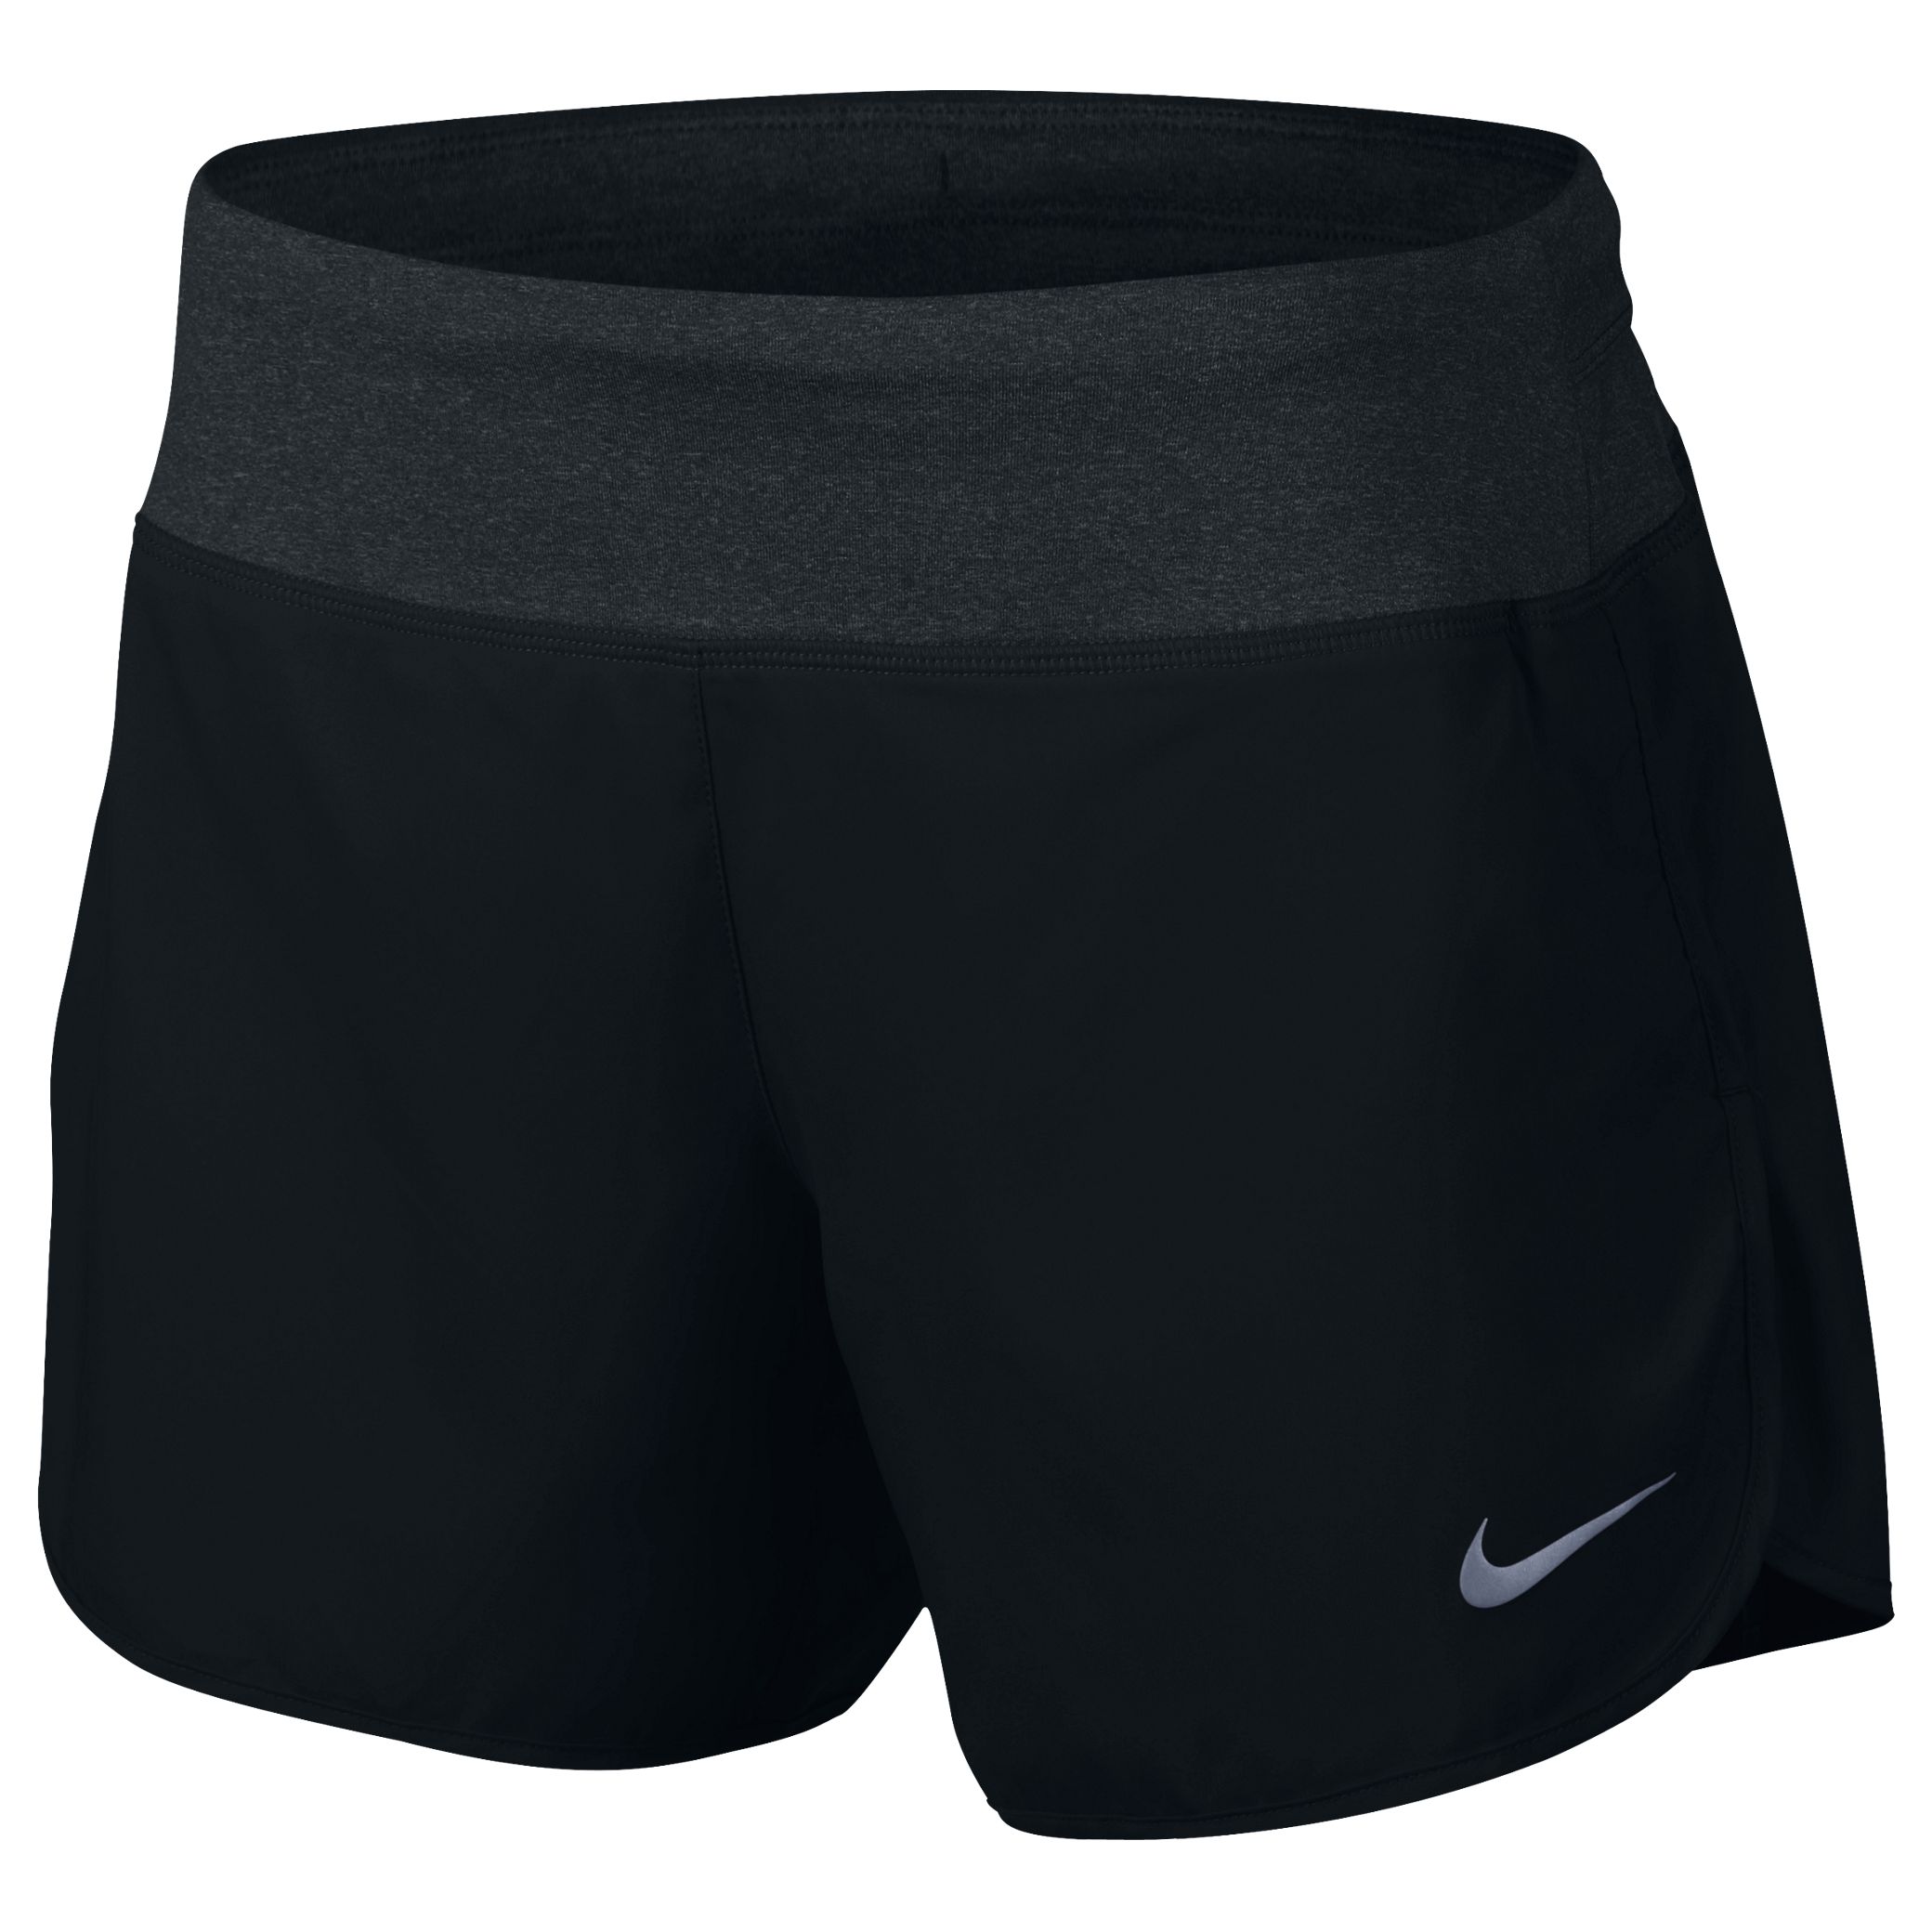 Nike Flex 5” Running Shorts, Black, M